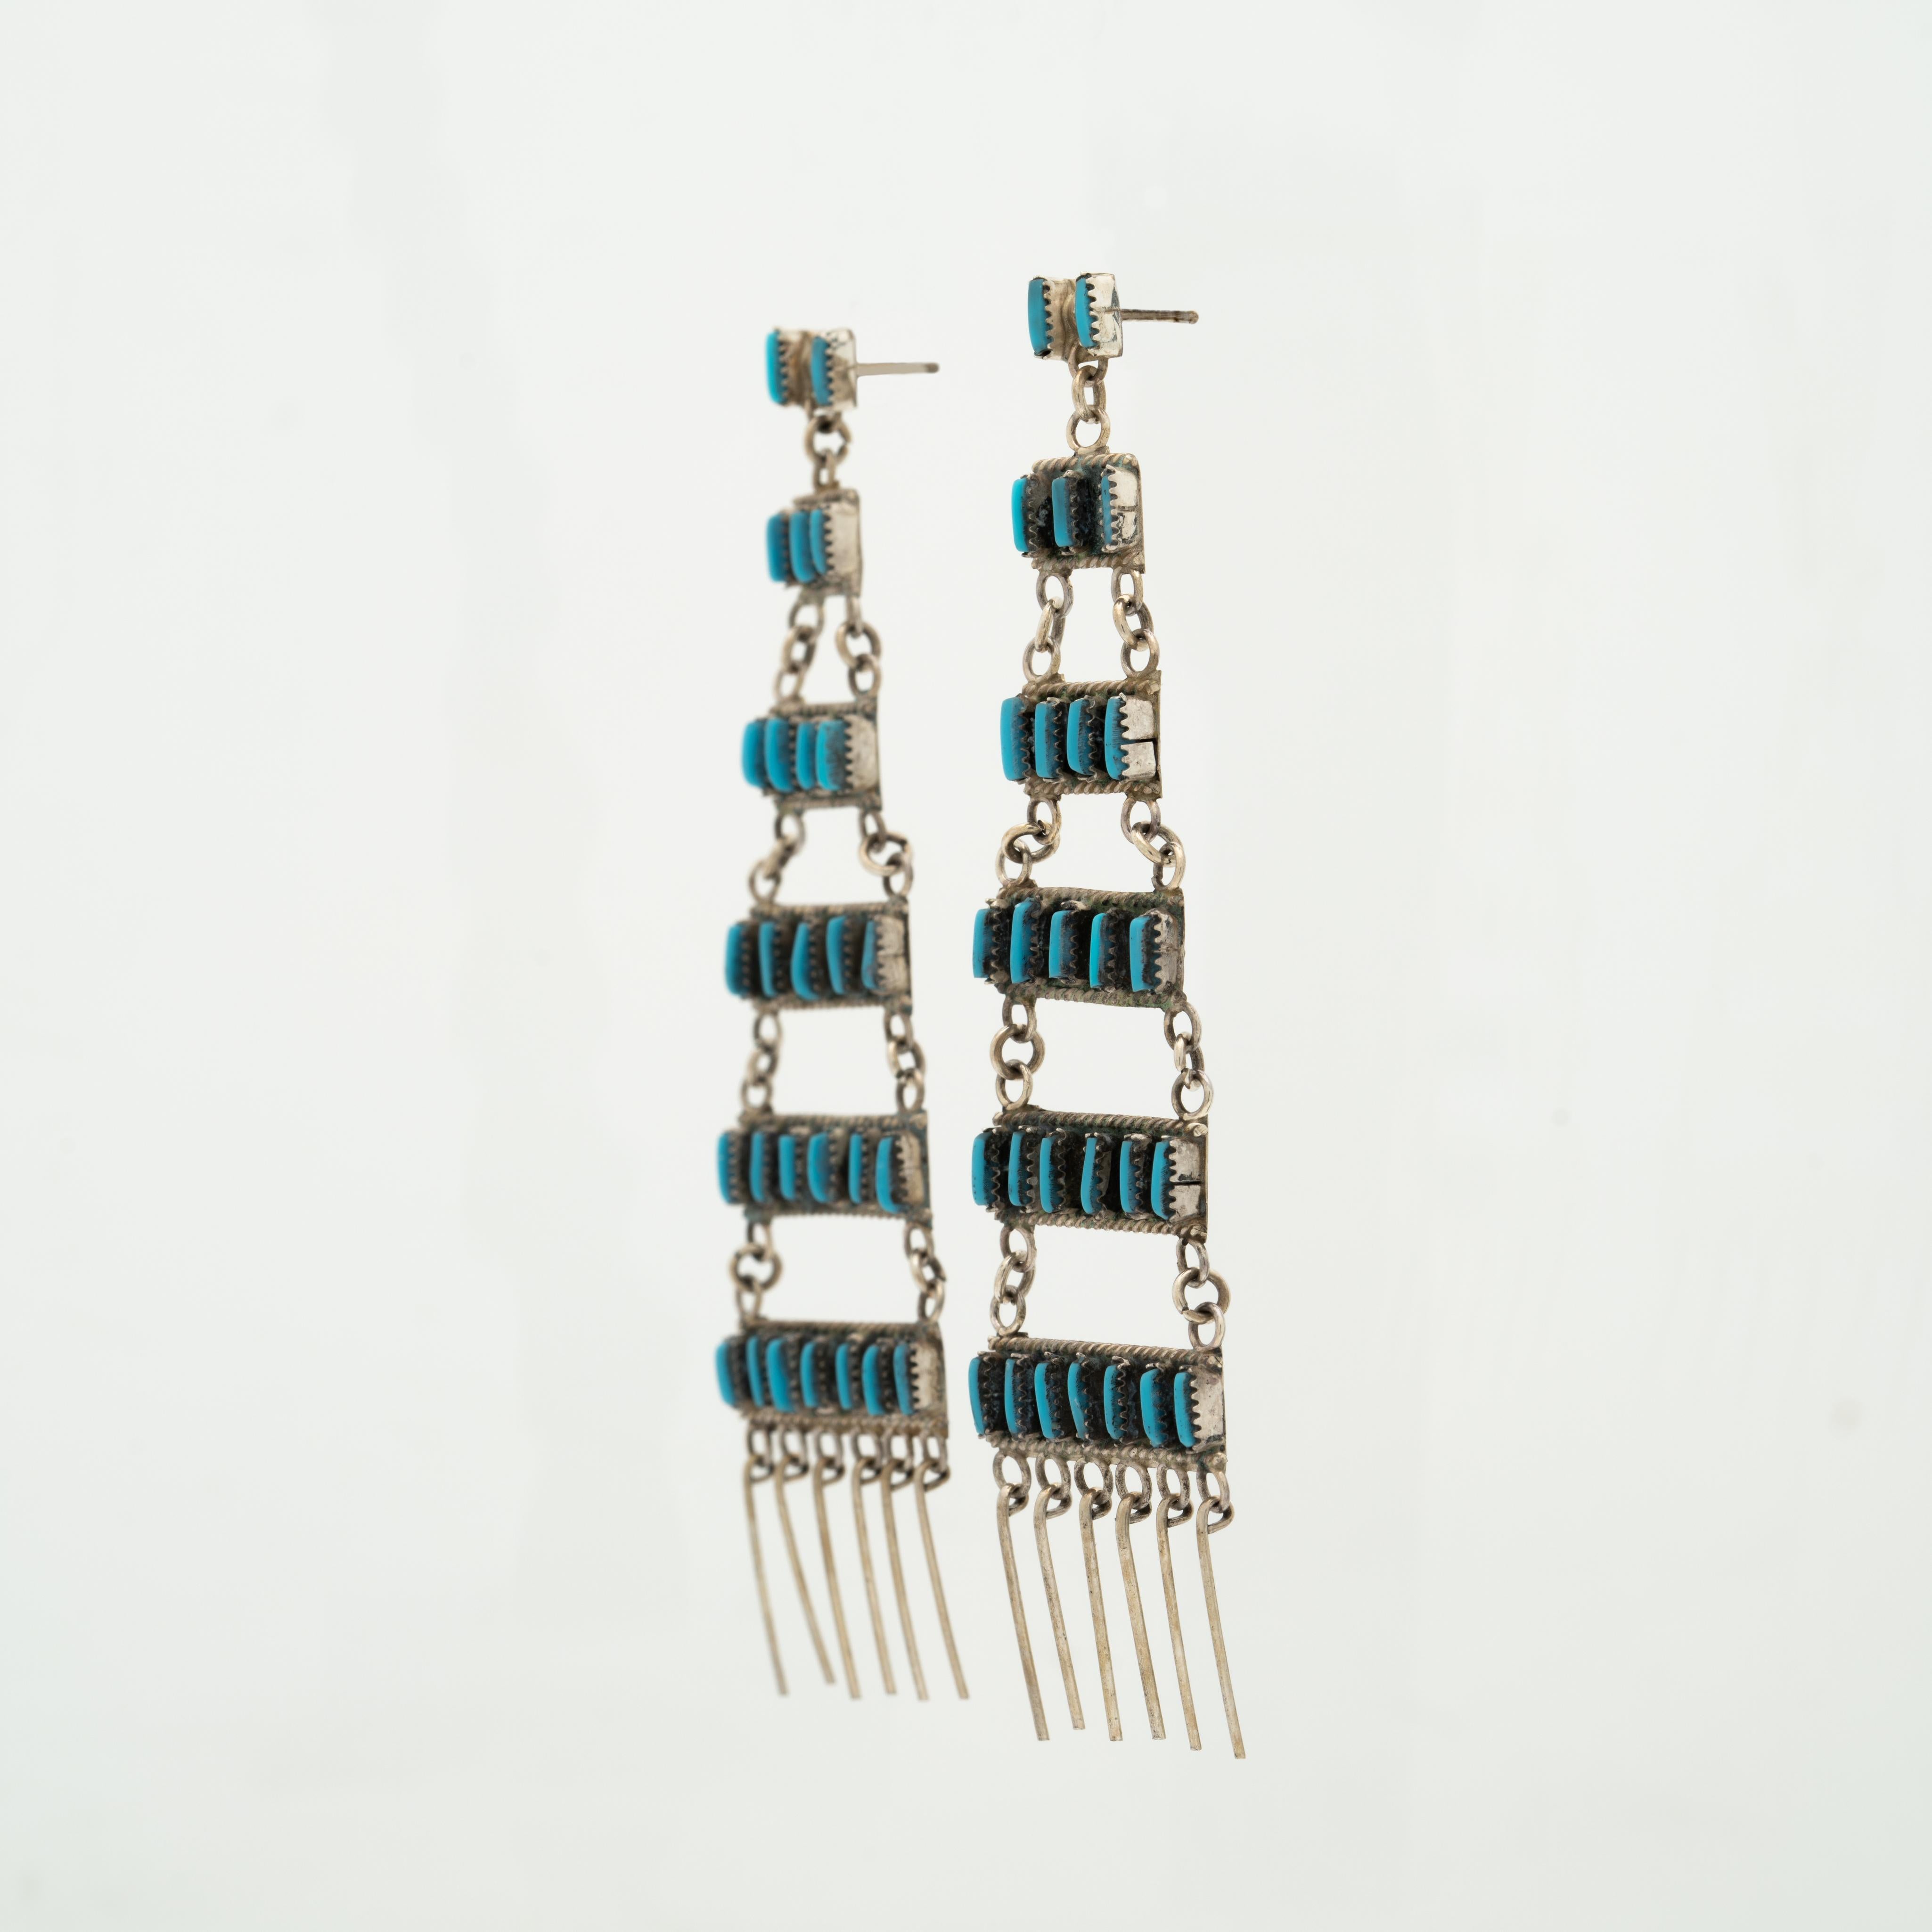 Native American Vintage Zuni Sterlingsilber und Türkis Fransen lange Kronleuchter-Ohrringe ca. 1970er Jahre

Länge und Breite: 99,4 mm x 25 mm
Gesamtgewicht pro Ohrring: 6,1 Gramm

c.1970's